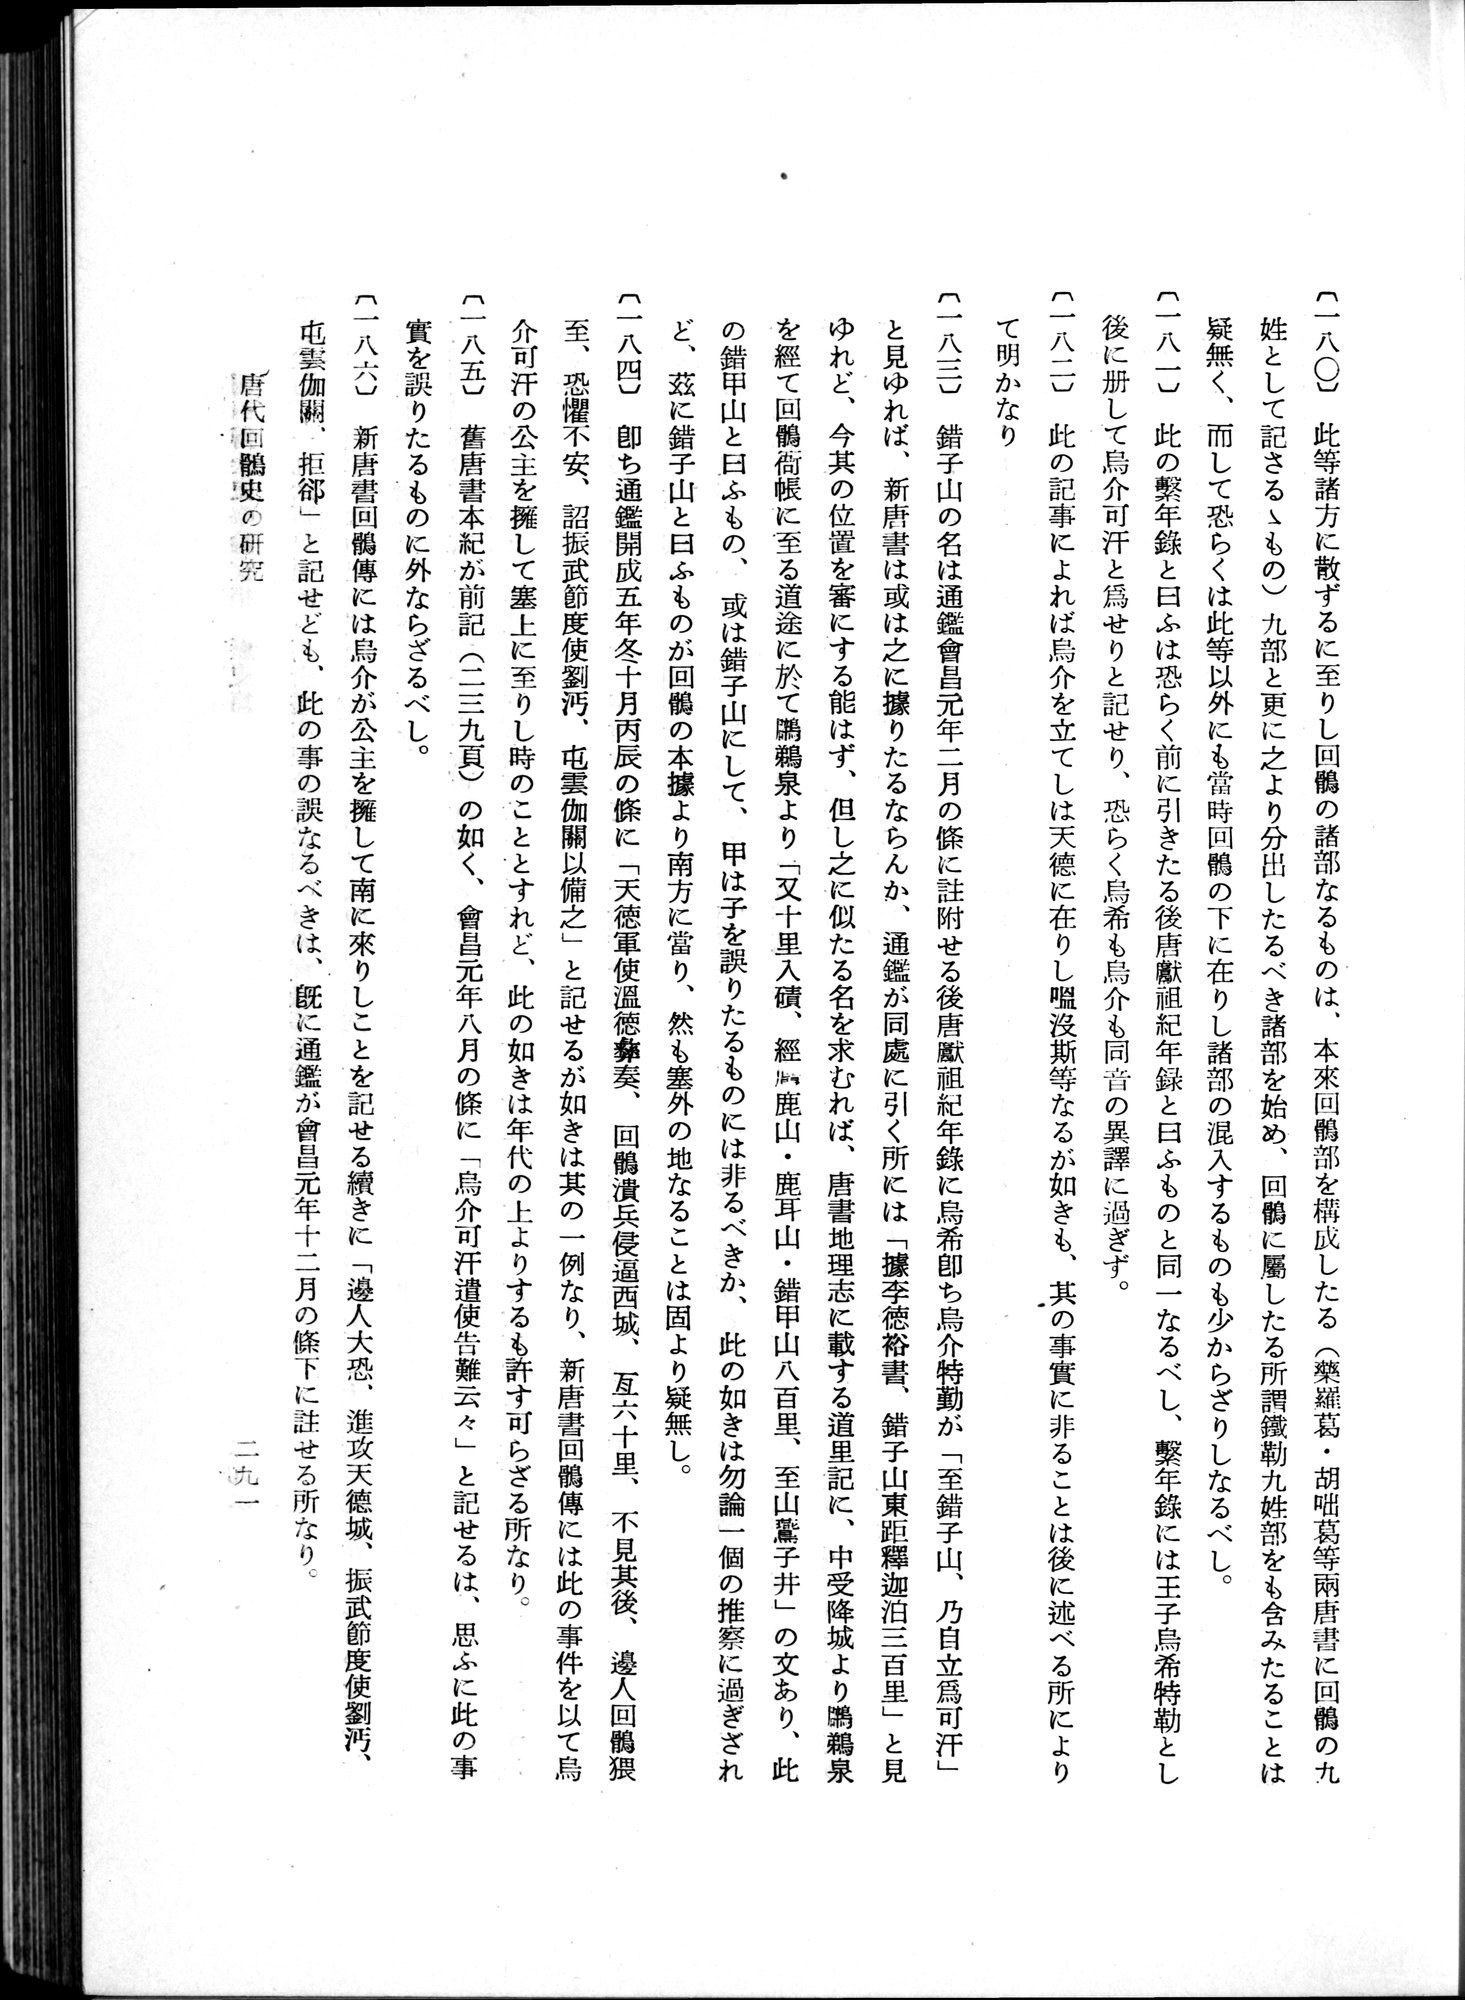 羽田博士史学論文集 : vol.1 / Page 329 (Grayscale High Resolution Image)